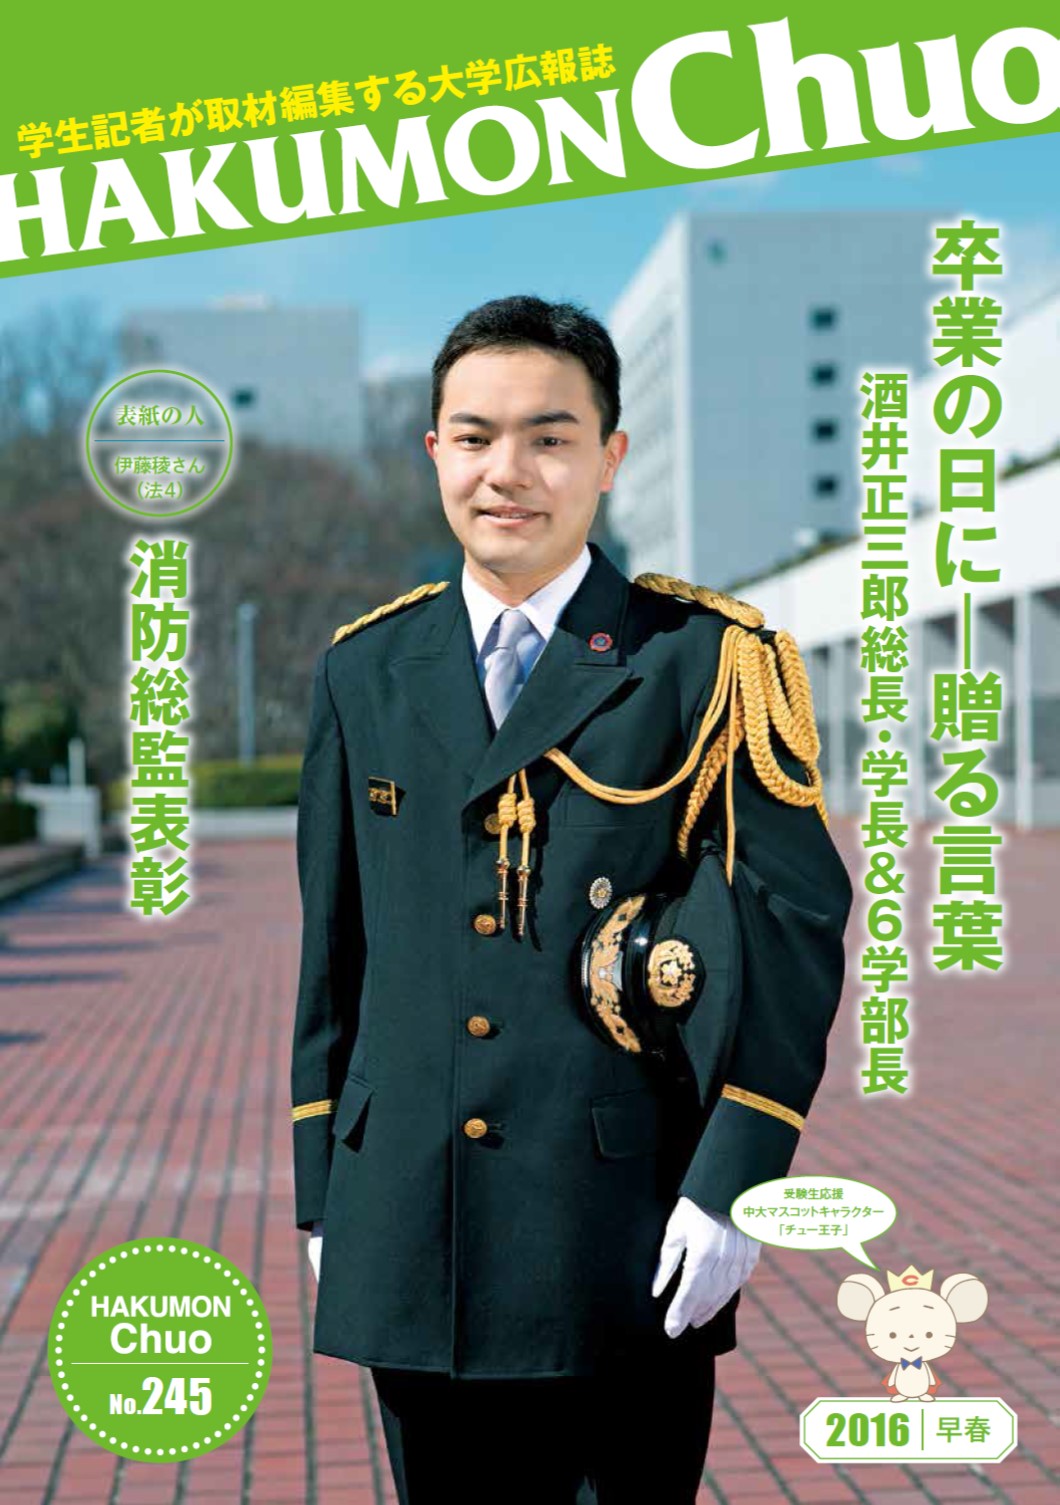 元新聞記者のプロと中央大学の学生が取材・編集する大学広報誌『HAKUMON Chuo』